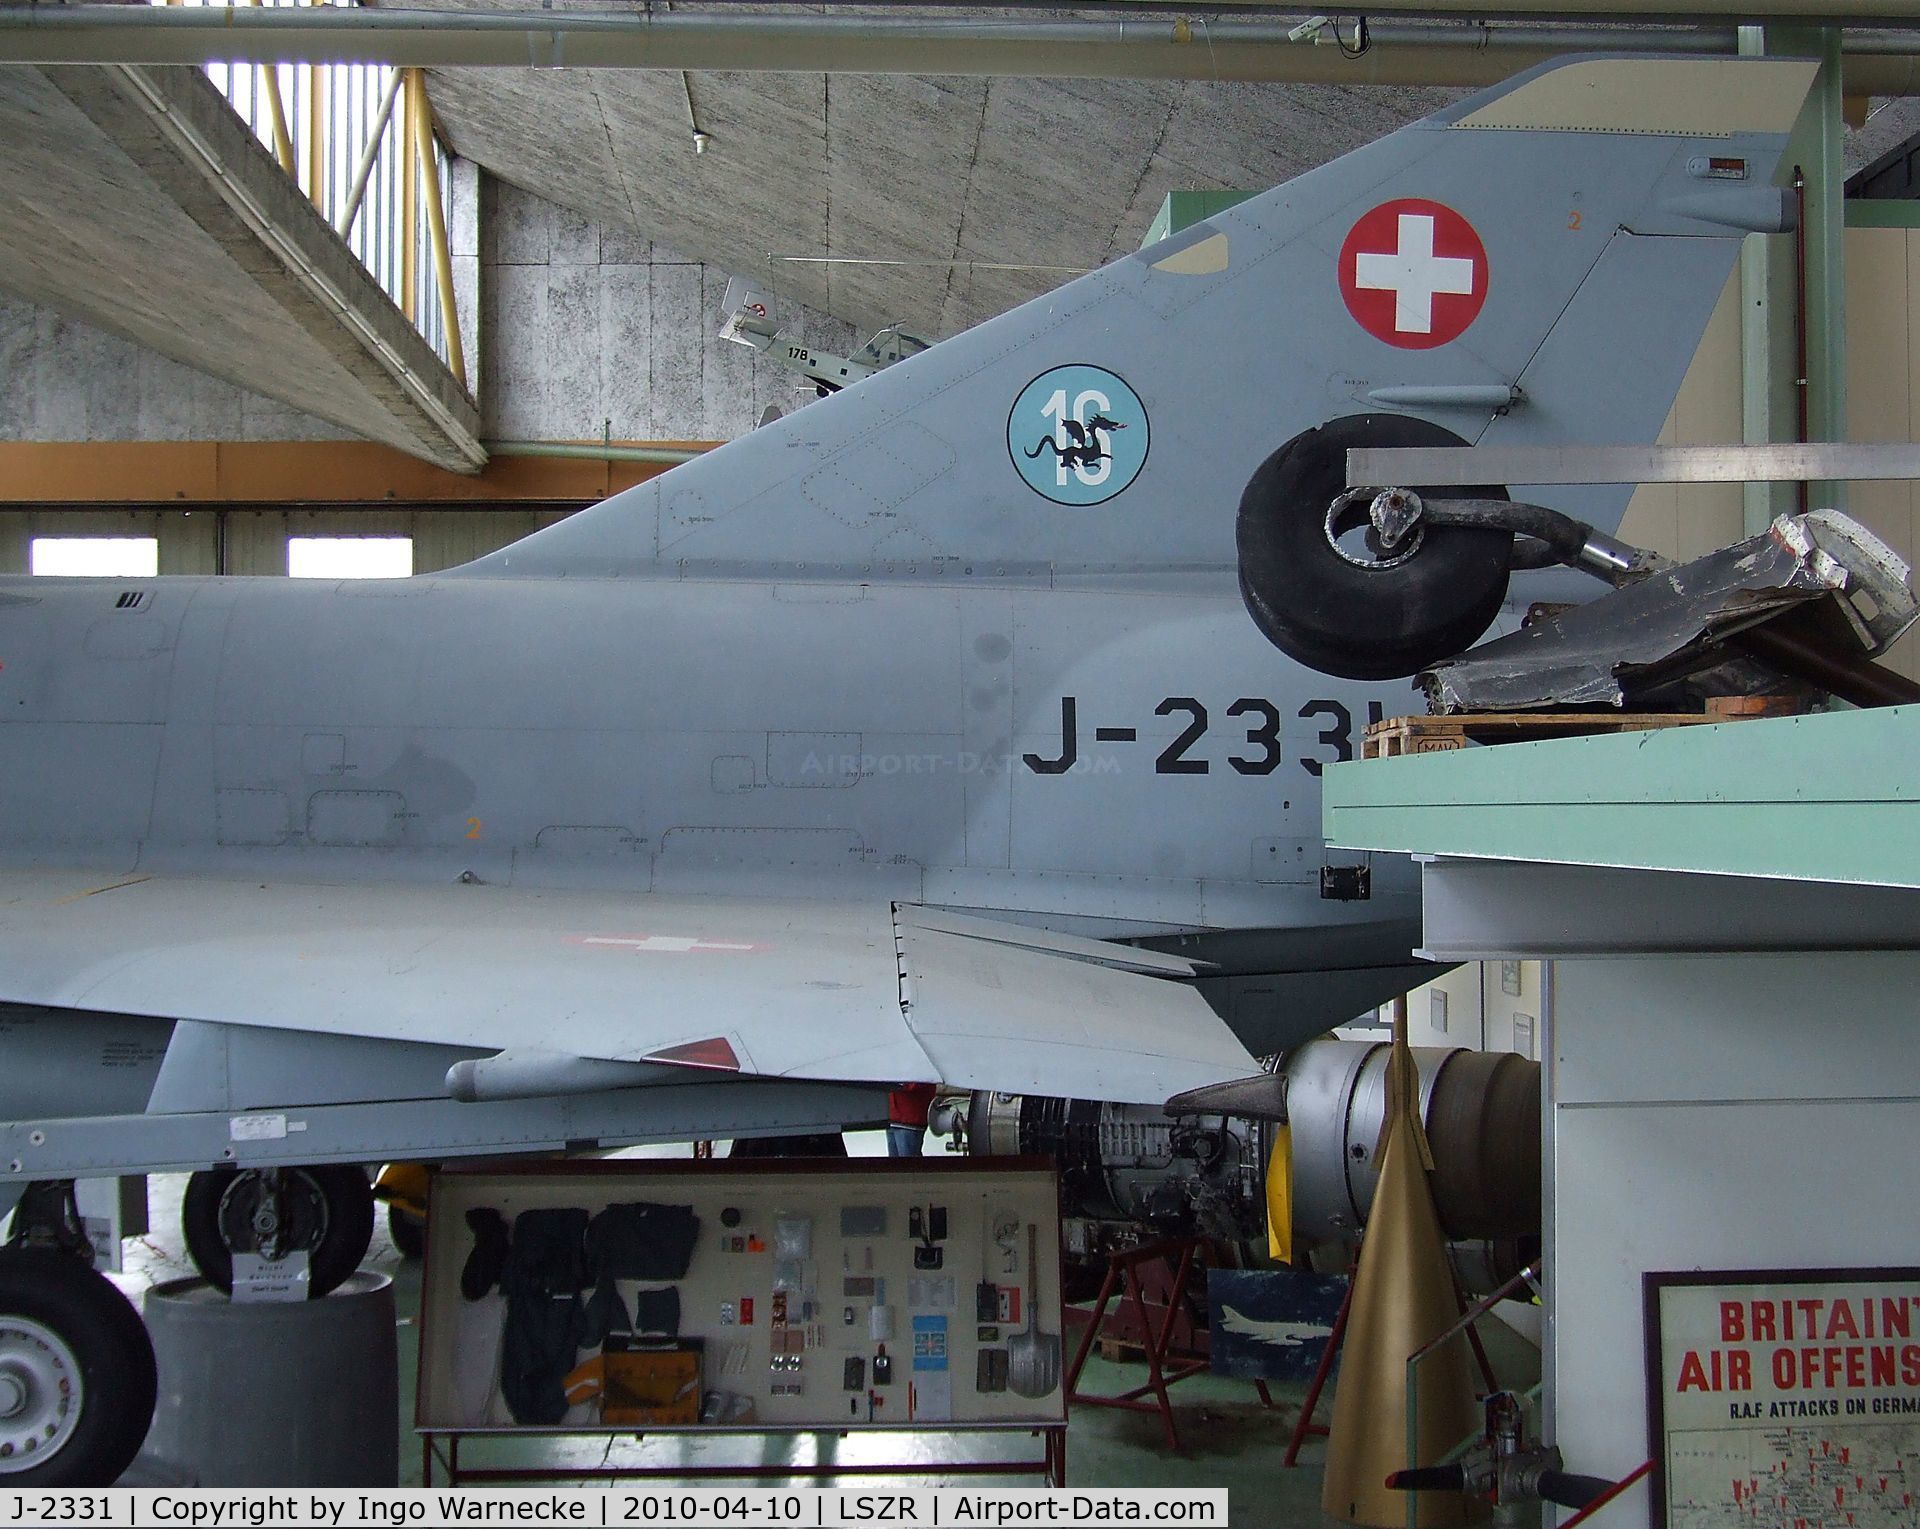 J-2331, Dassault (F+W Emmen) Mirage IIIS C/N 17-26-128/1021, Dassault Mirage III S of the Swiss air force at the Fliegermuseum Altenrhein